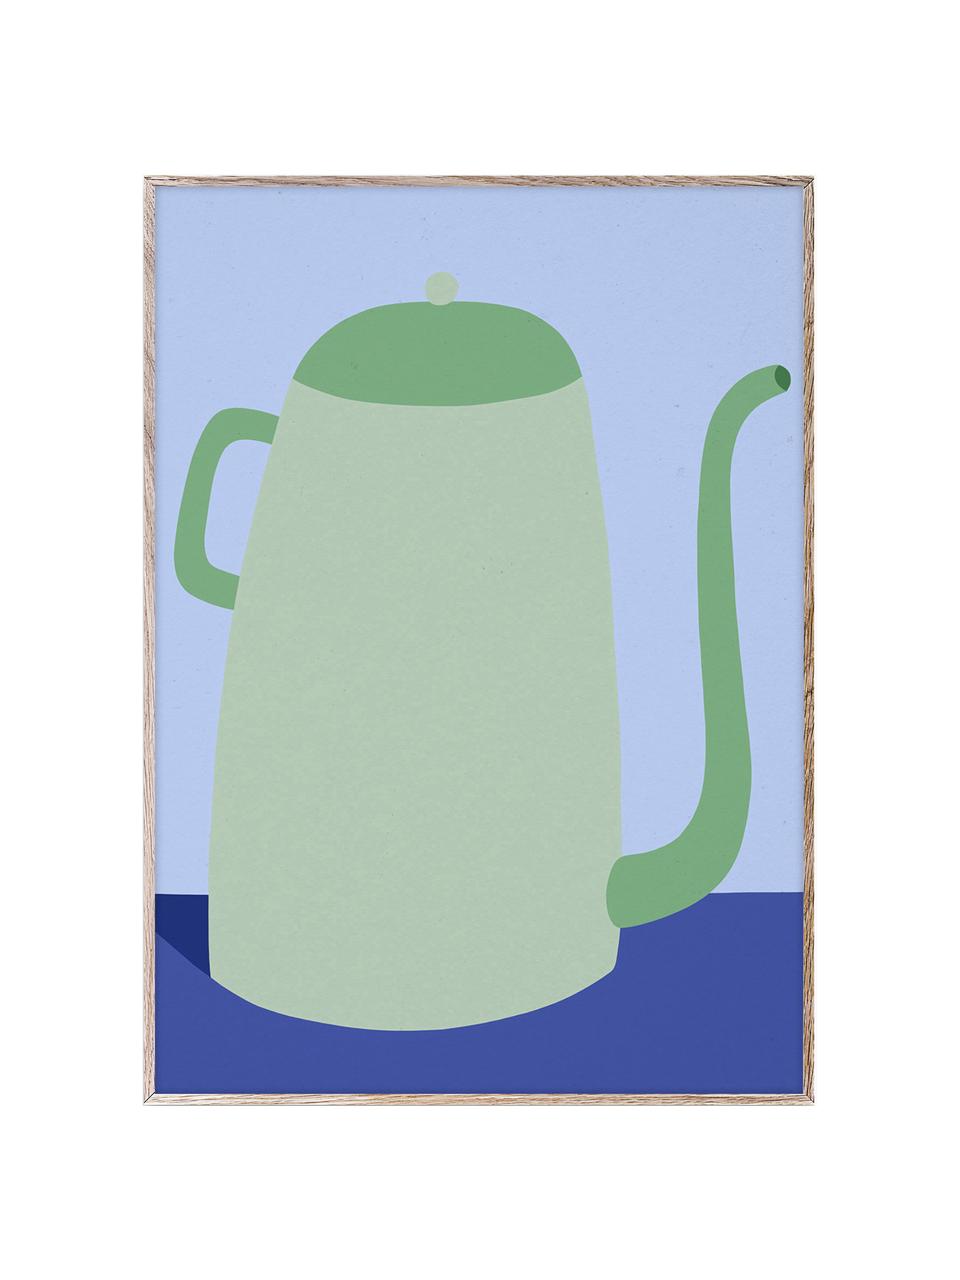 Plakát Cafetiere, 210g matný papír Hahnemühle, digitální tisk s 10 barvami odolnými vůči UV záření, Odstíny zelené a modré, Š 30 cm, V 40 cm